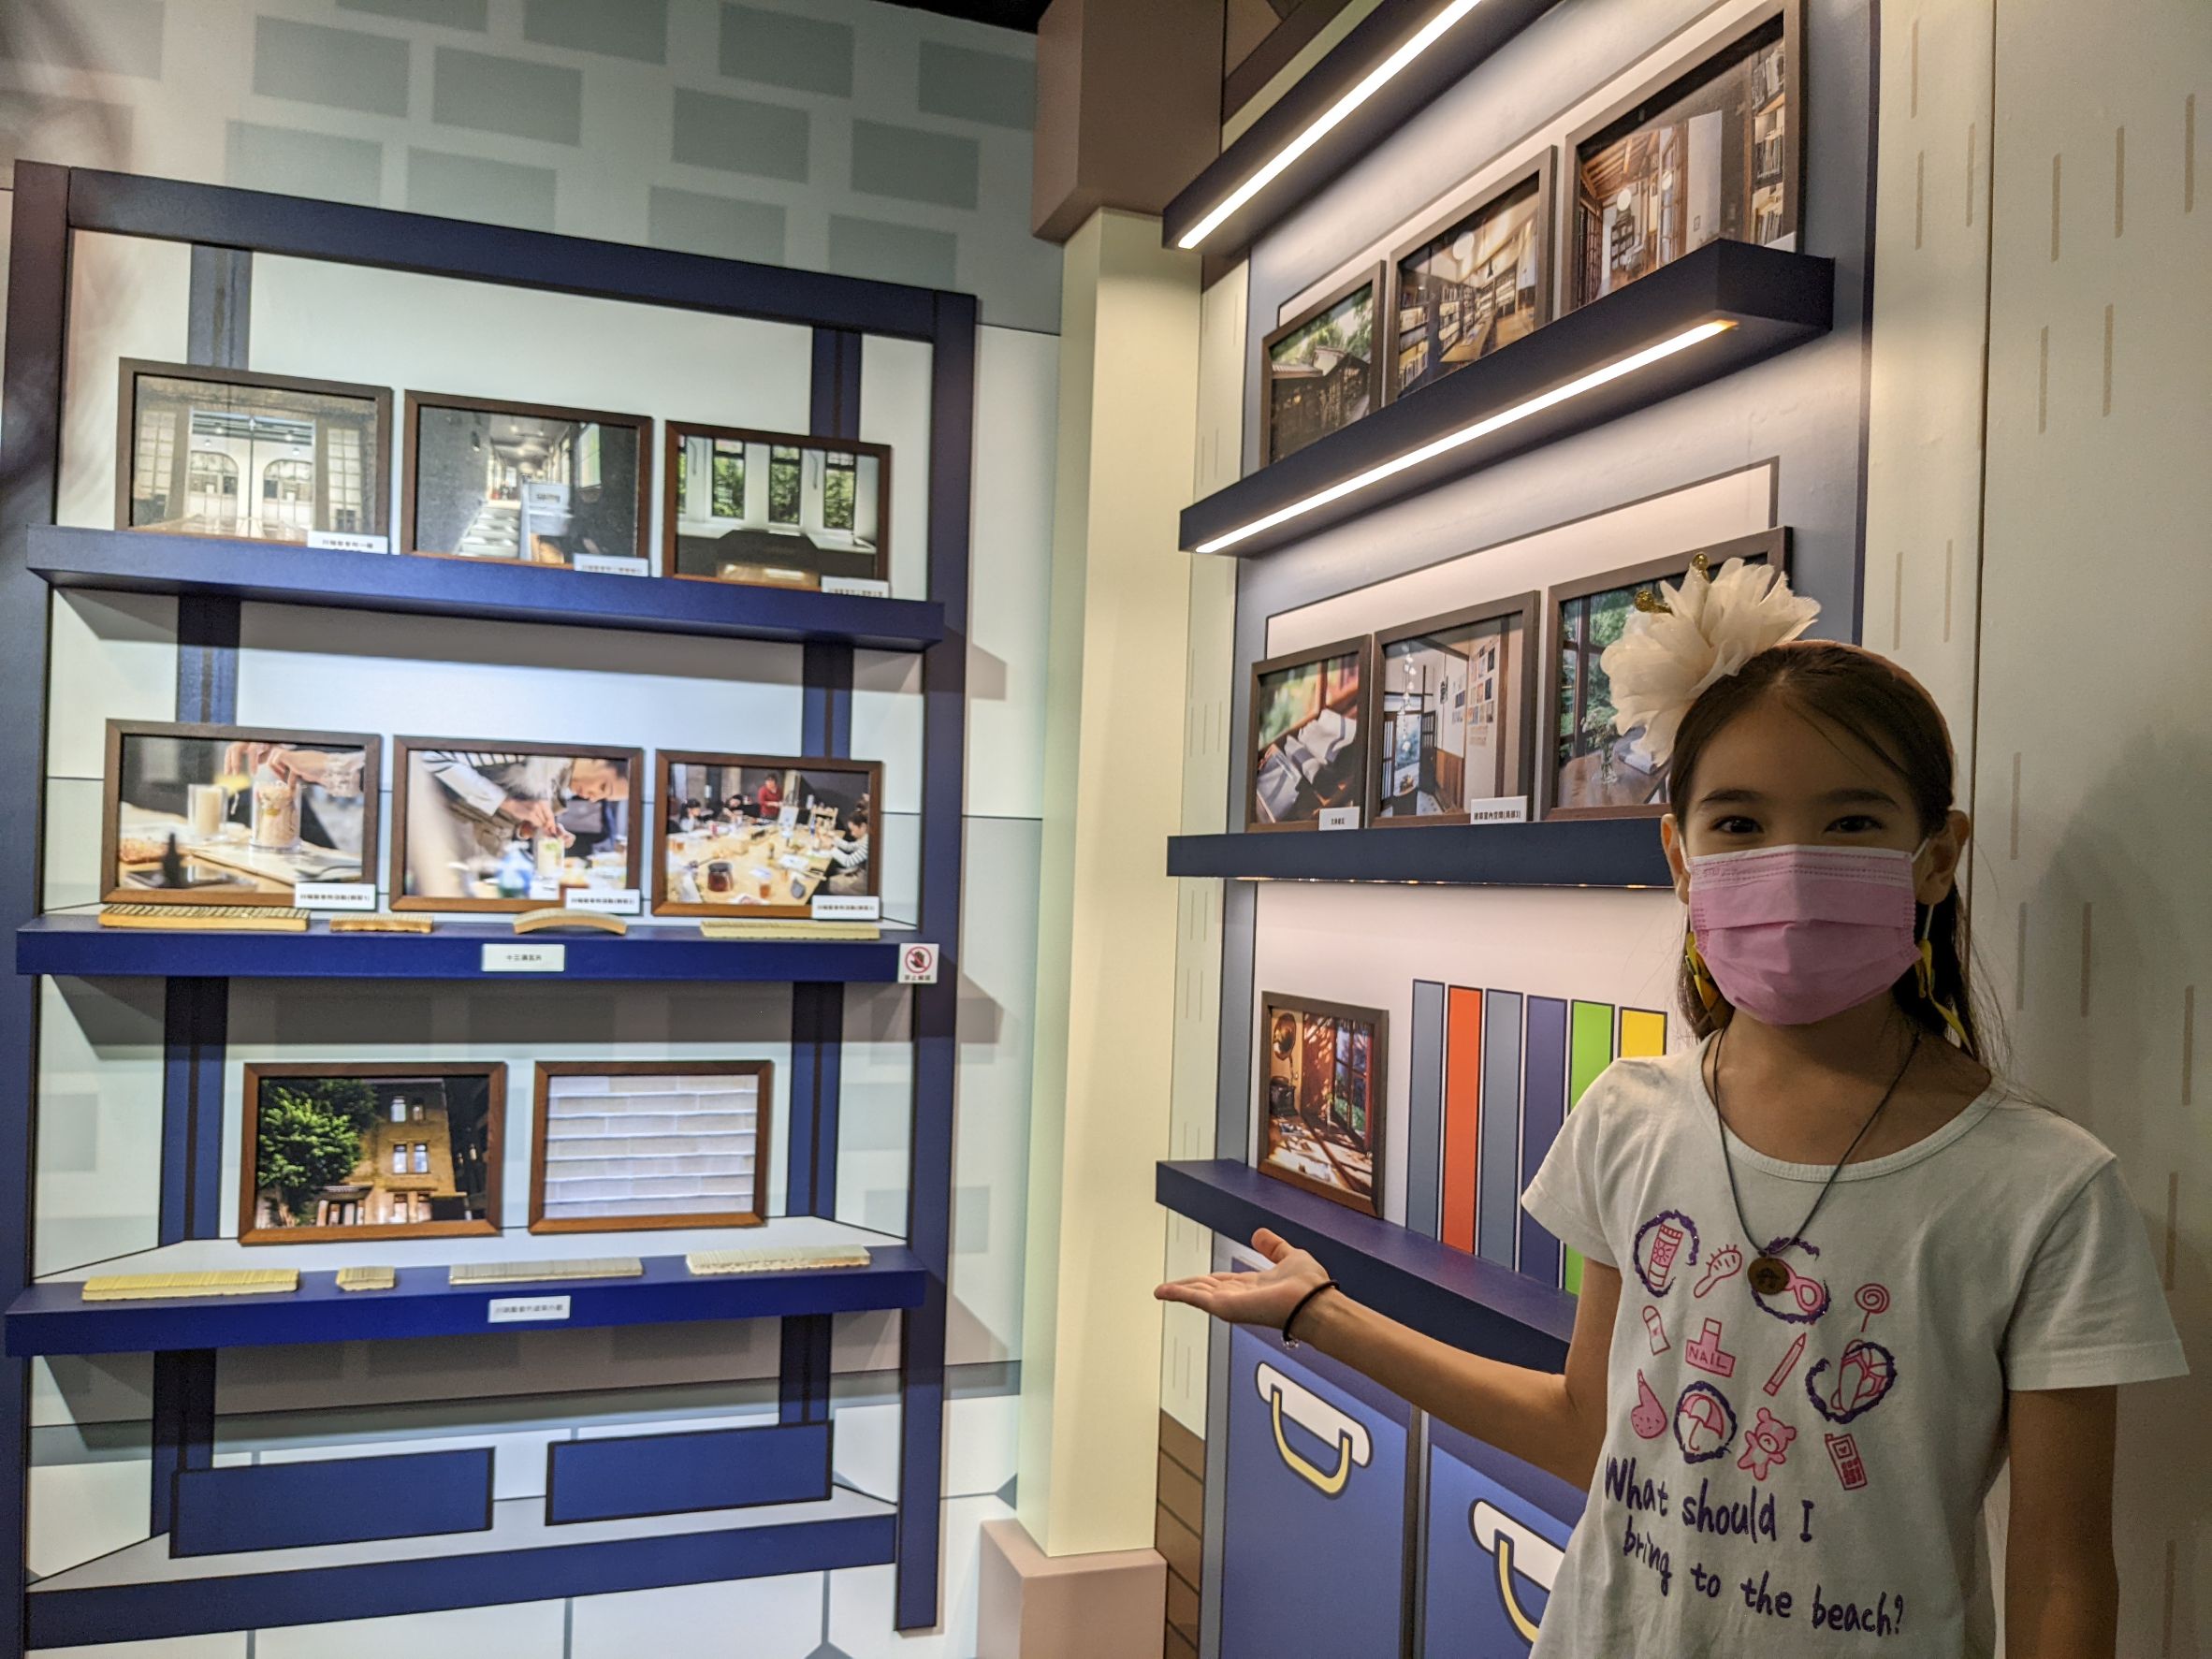 雙永國小五年級陳丹綺小朋友印象最深刻的是「文房・文化閱讀空間」的黑瓦與檜木香